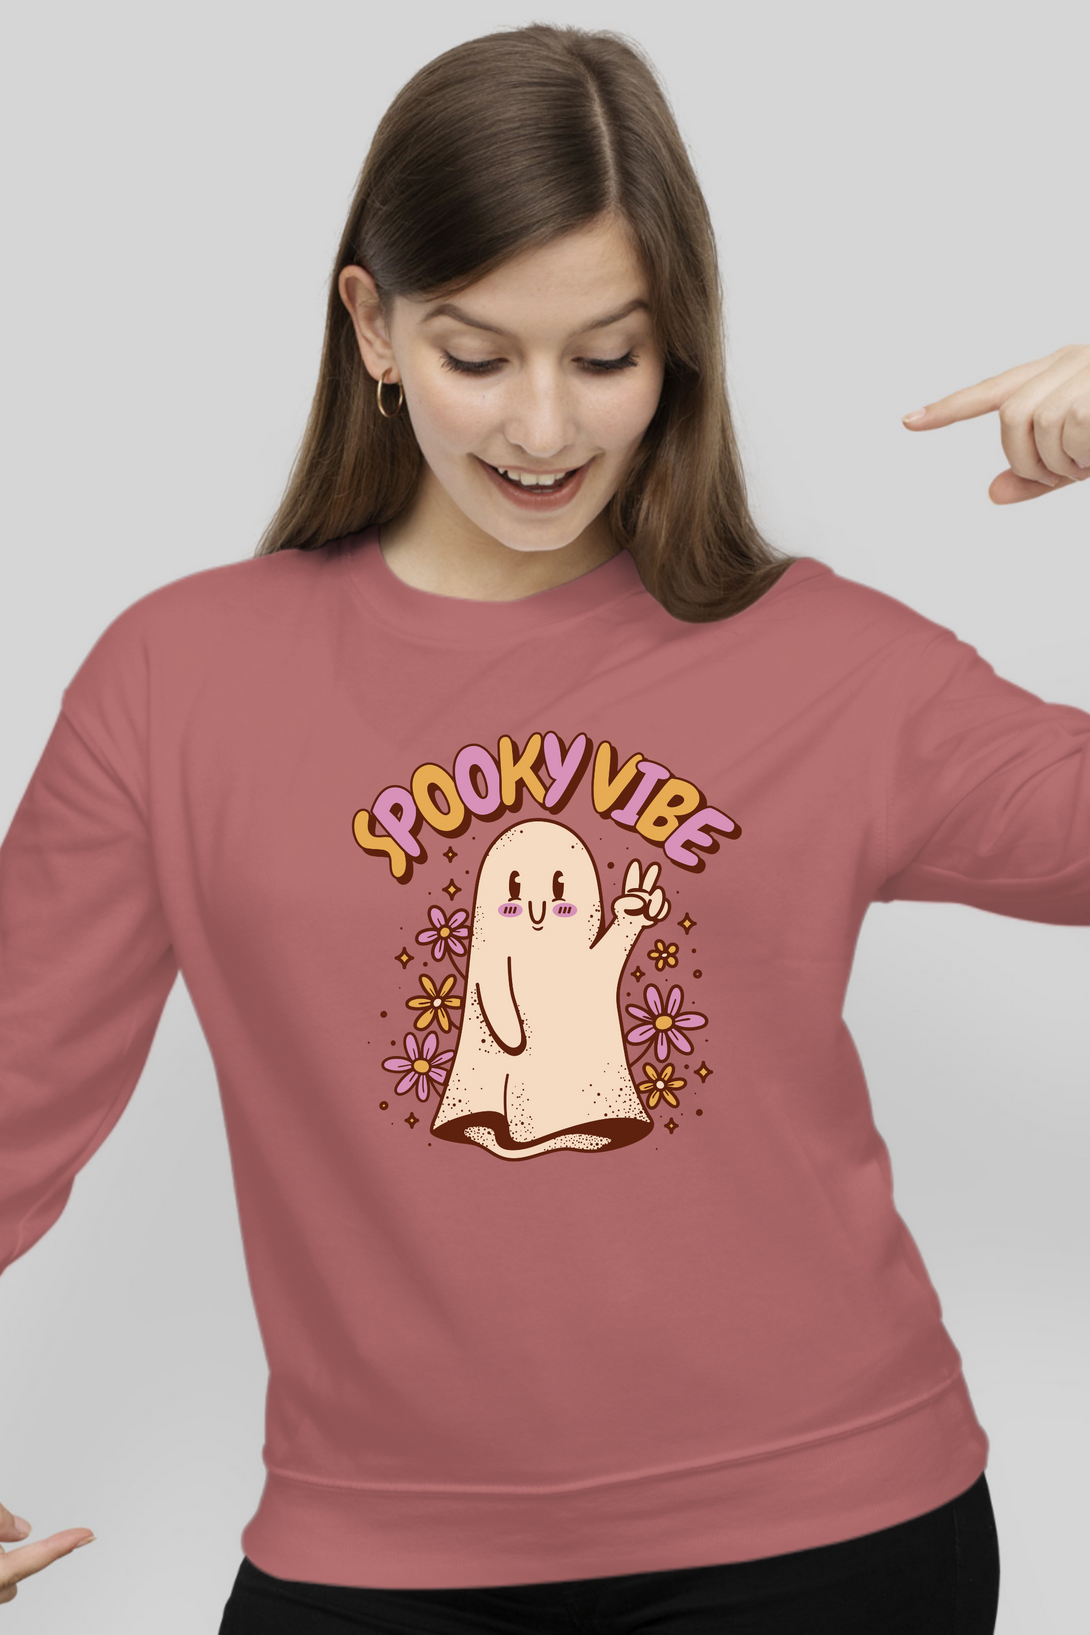 Spooky Vibe Cute Ghost Printed Sweatshirt For Women - WowWaves - 2